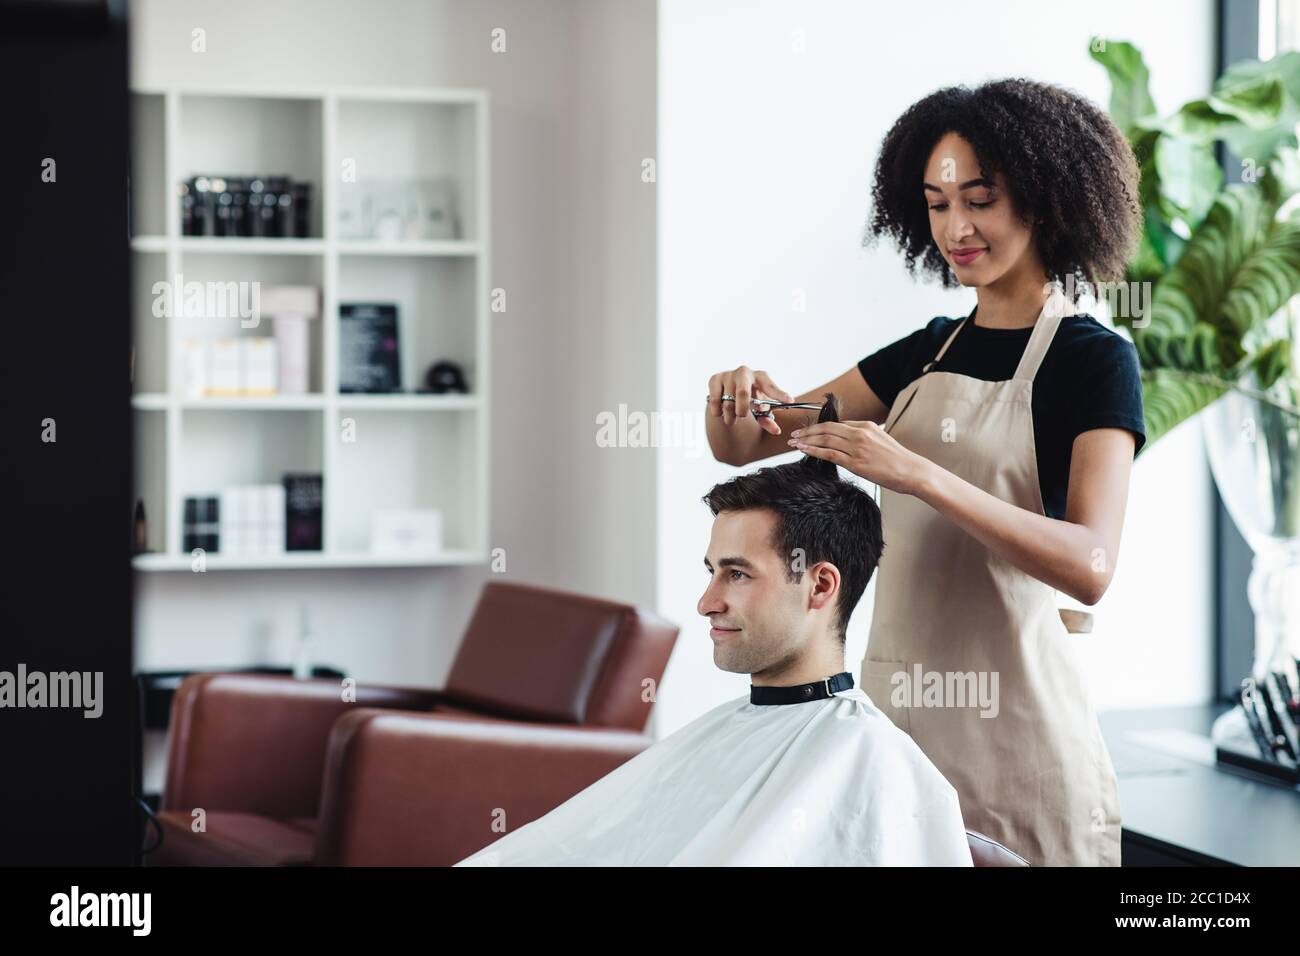 Un gars gai qui obtient une nouvelle coupe de cheveux aux coiffeurs, espace vide Banque D'Images